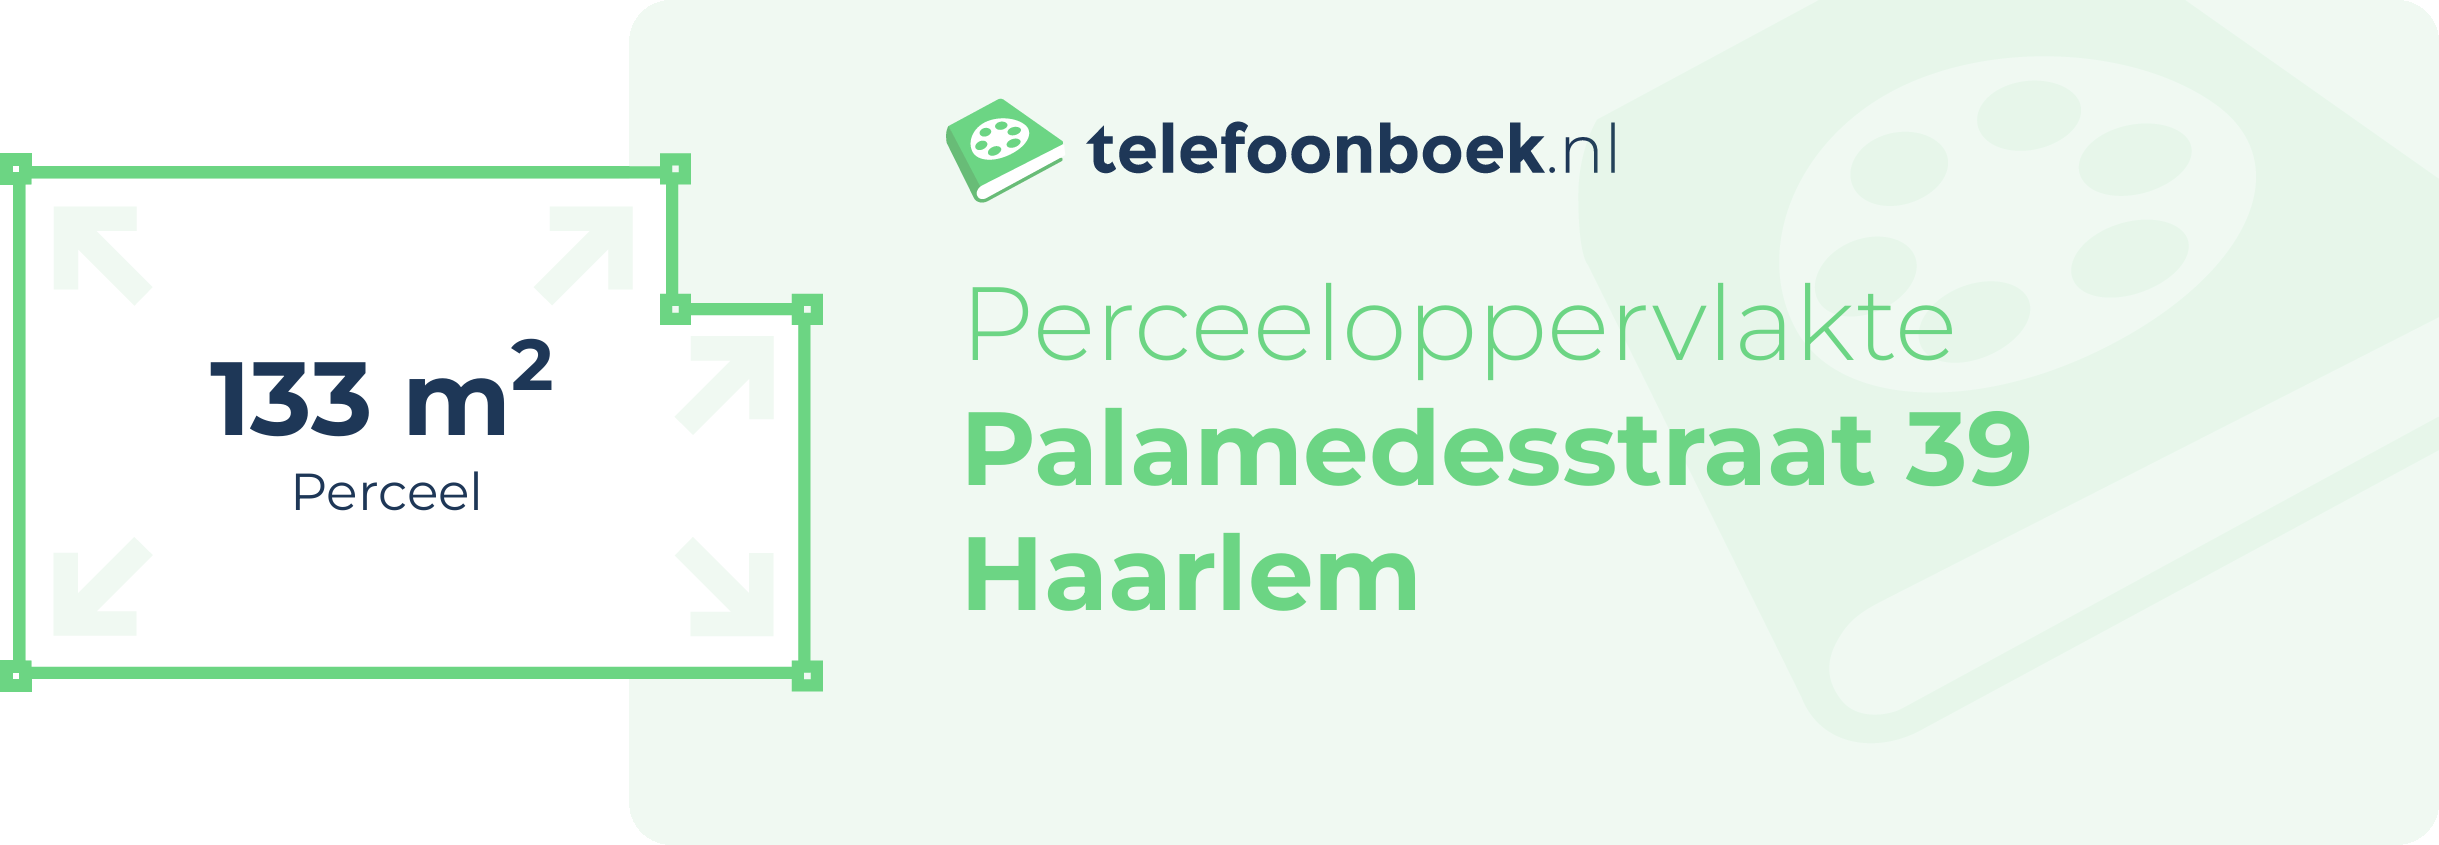 Perceeloppervlakte Palamedesstraat 39 Haarlem